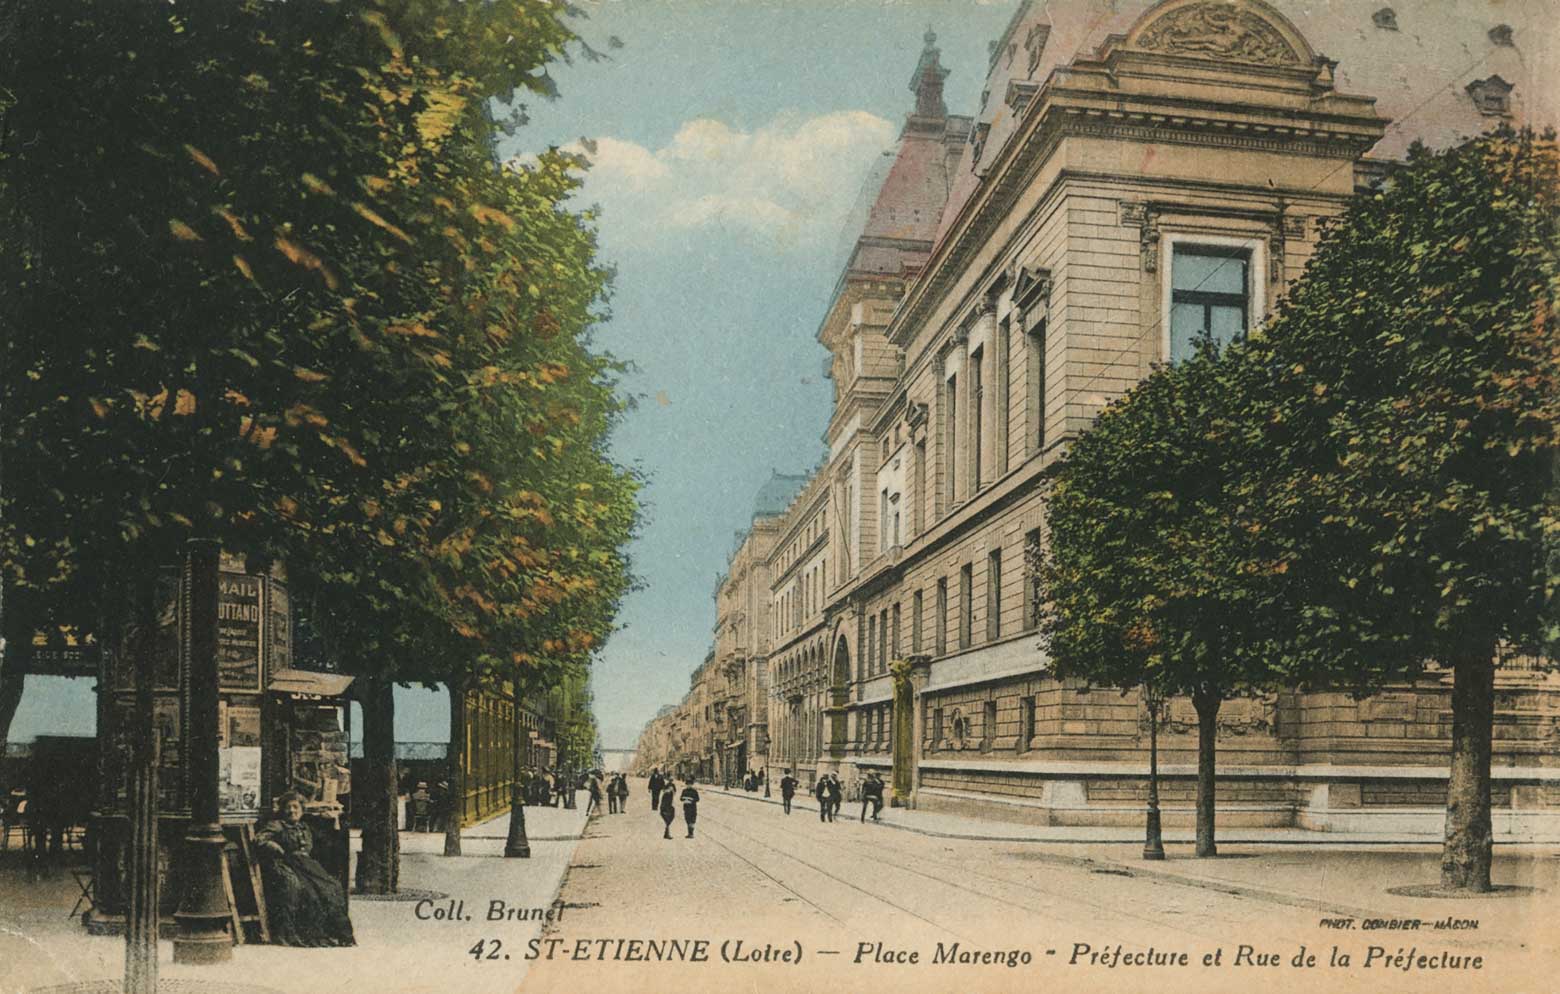 St-Étienne - postcard scan 1 main image